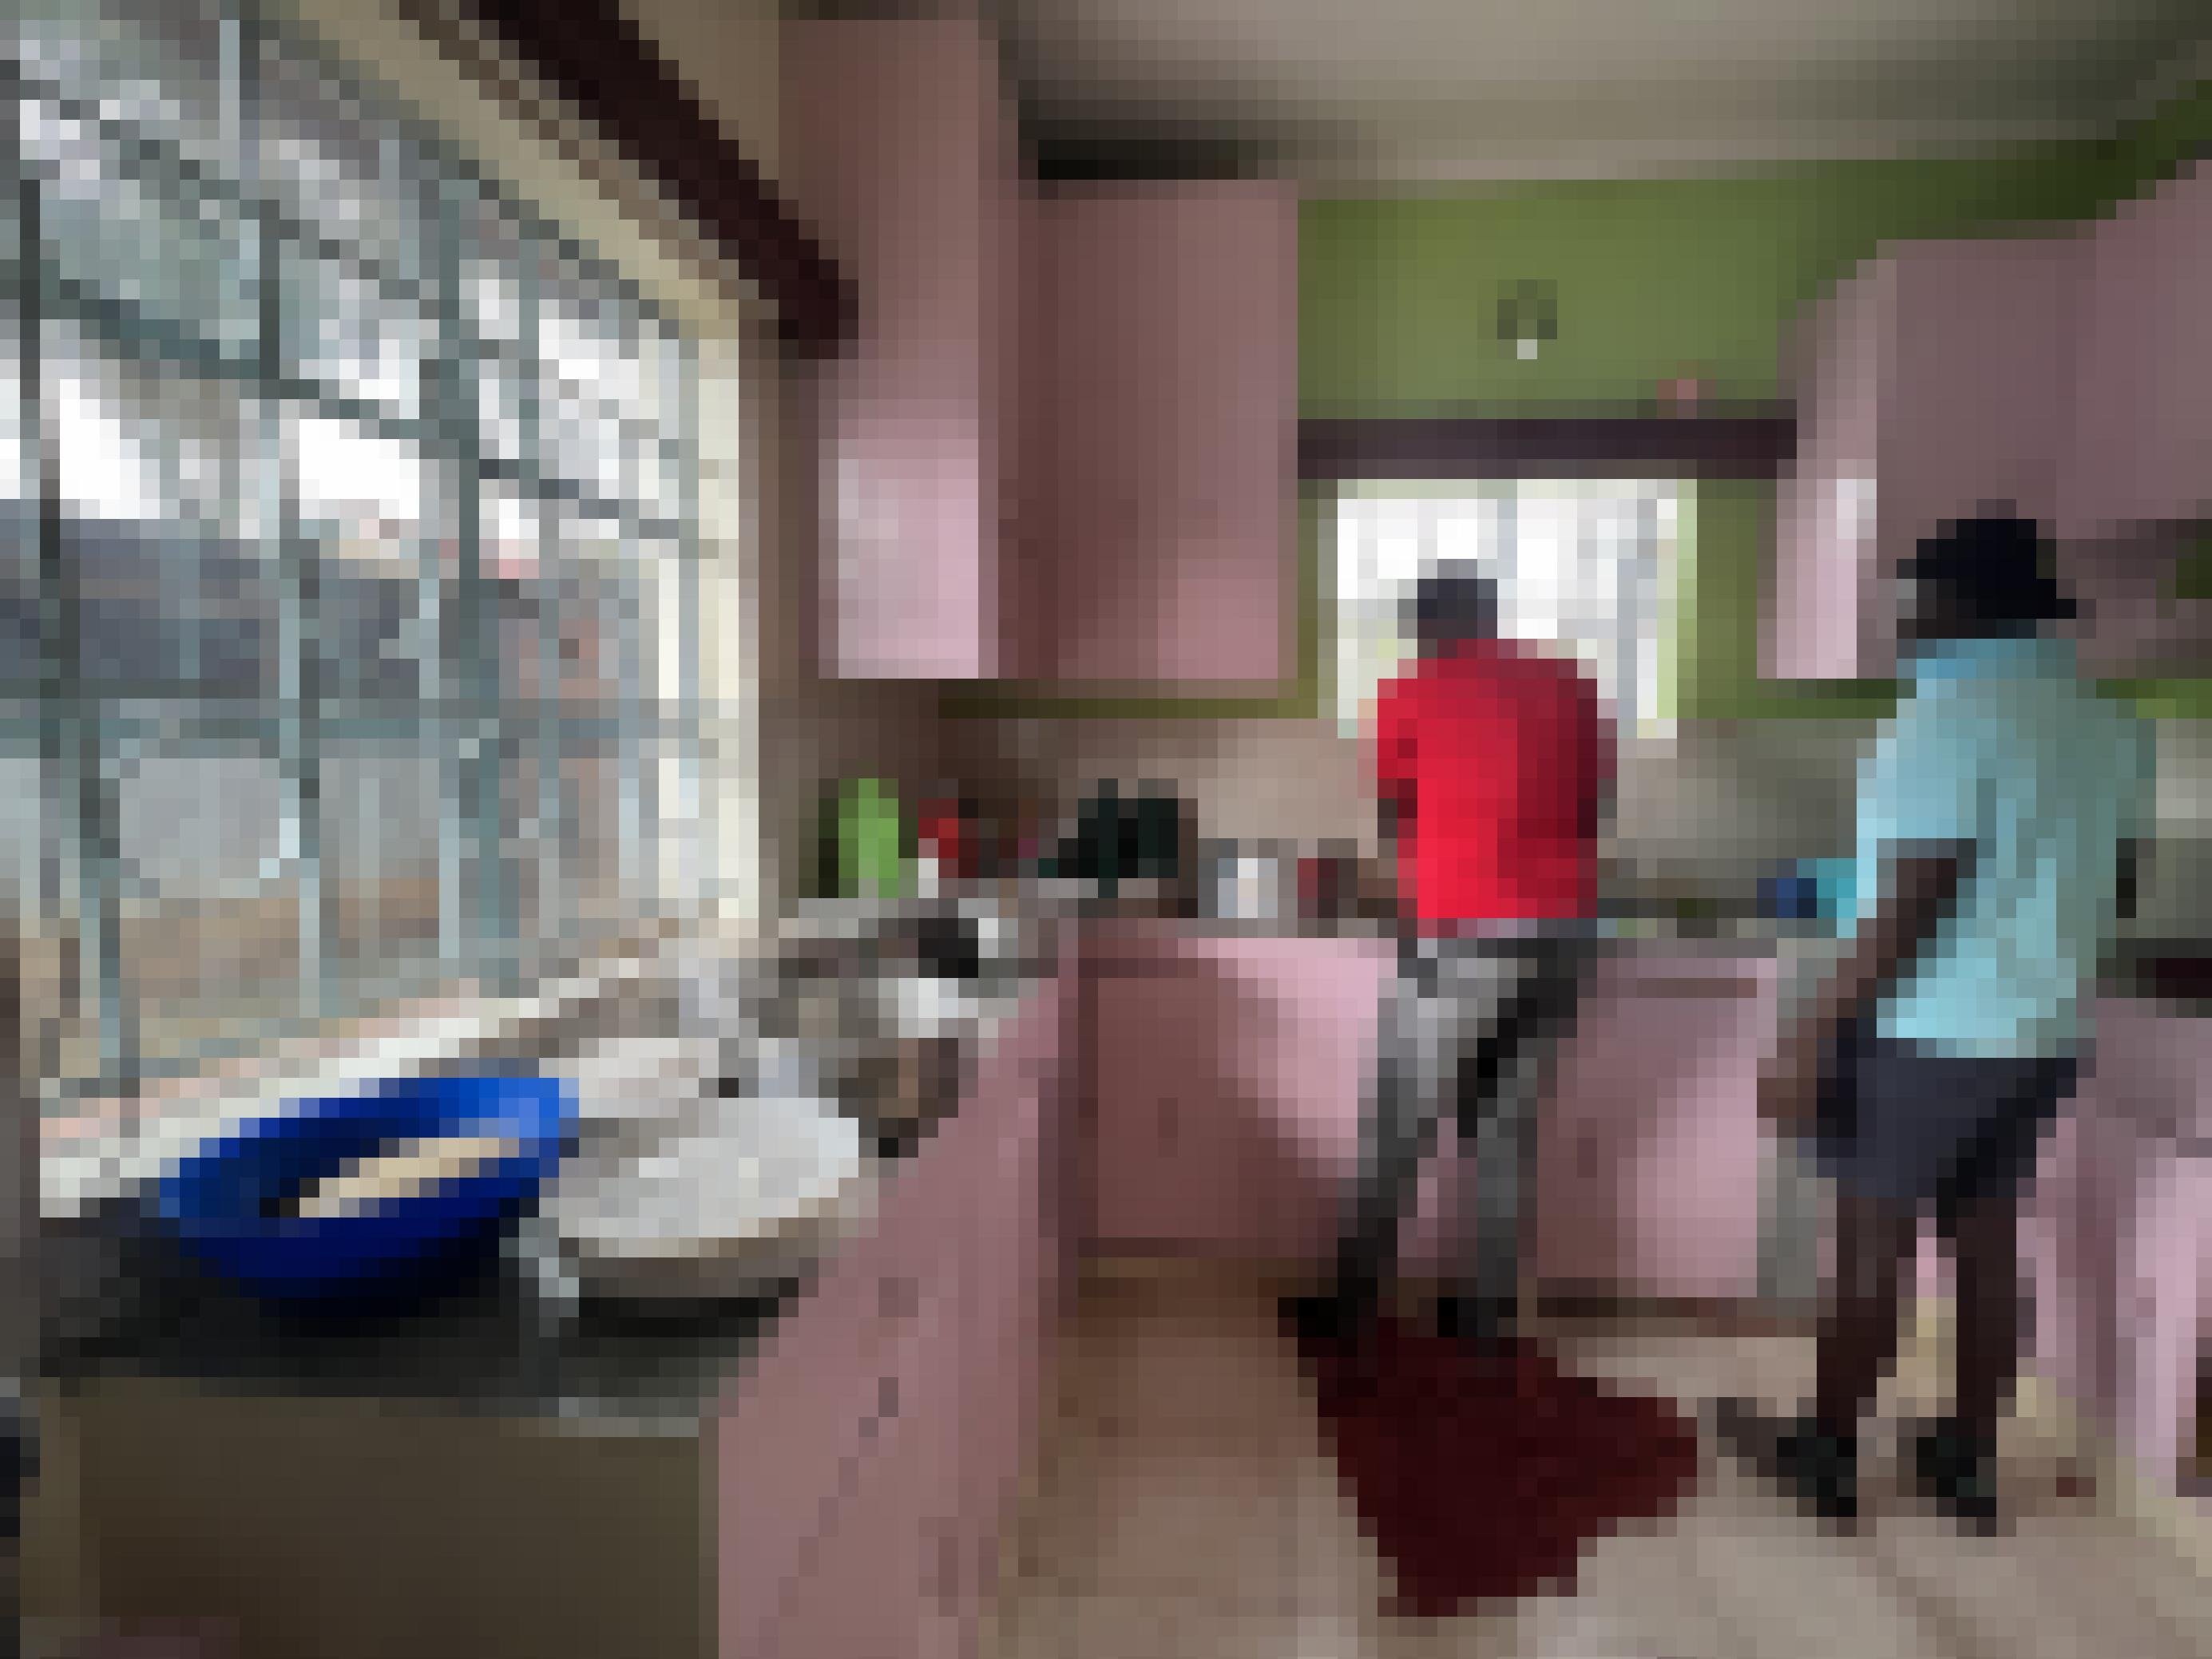 In der Küche des Hauses sind zwei Flüchtlinge von hinten zu sehen, sie sind offensichtlich dabei, eine Mahlzeit für mehrere Menschen vorzubereiten. Mehrere Töpfe sind schon wie für ein Buffet auf der Arbeitsplatte der Küche aufgebaut.